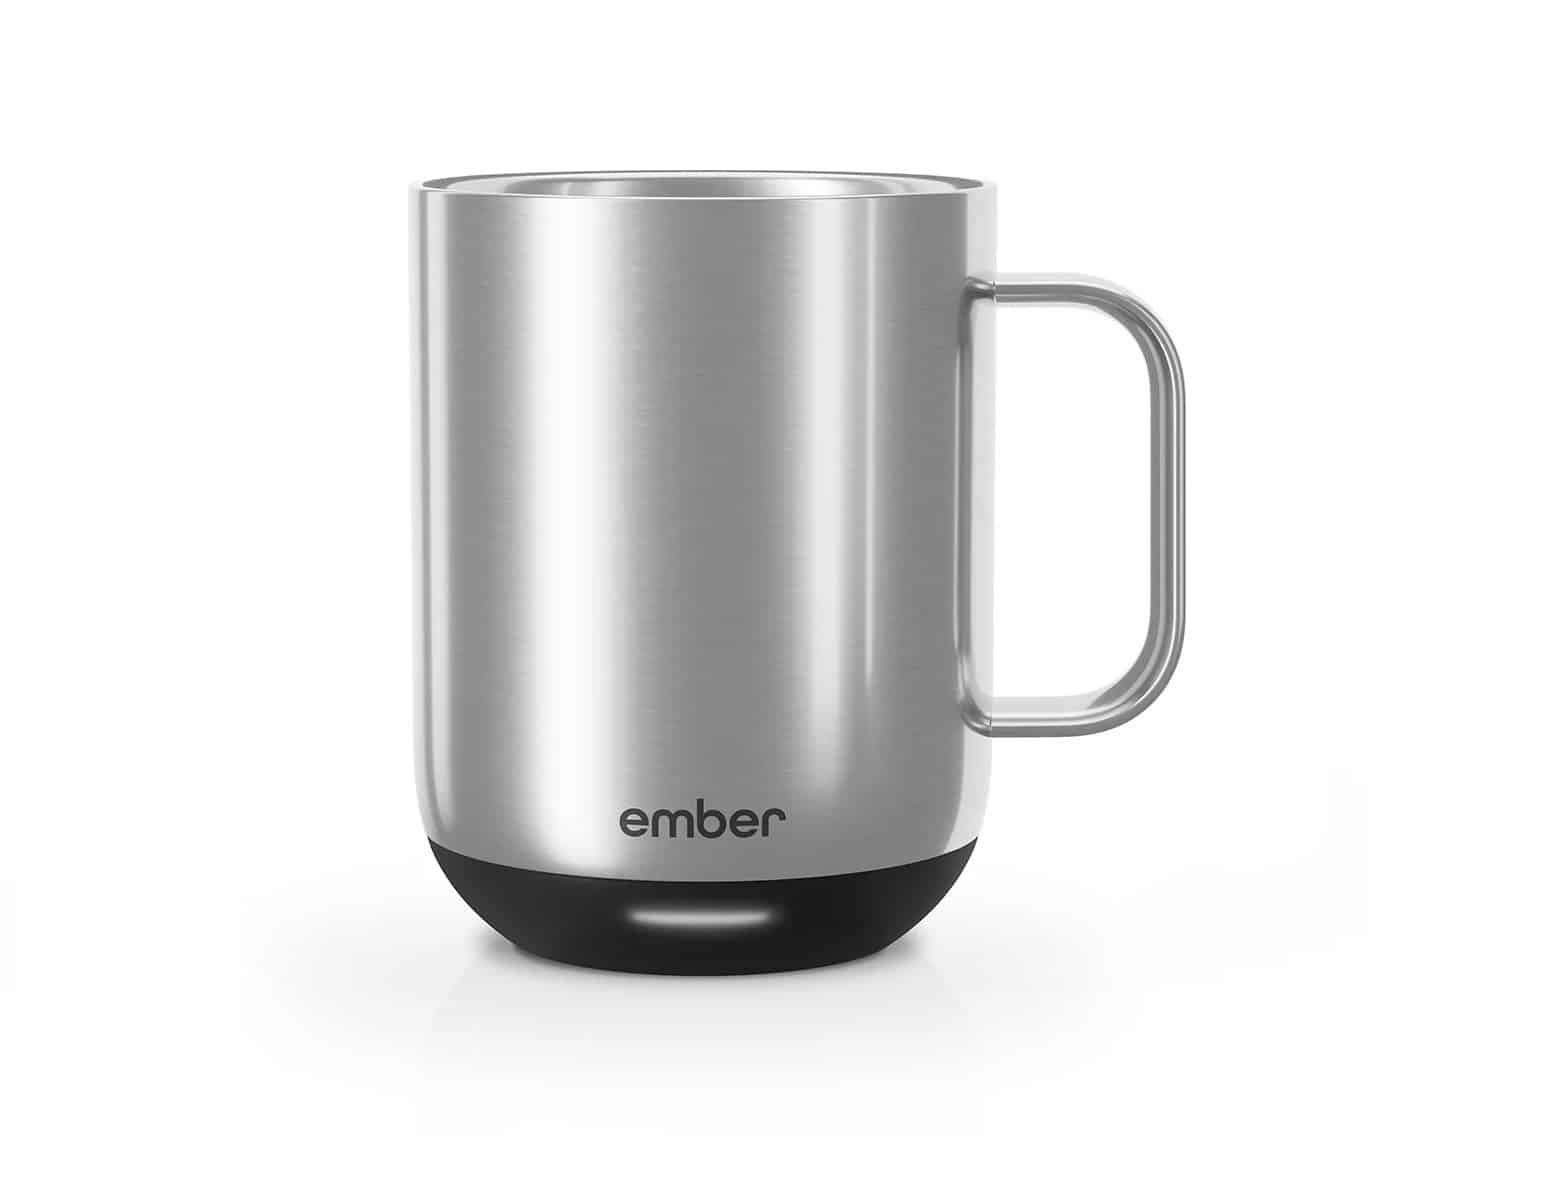 Ember self-heating mug